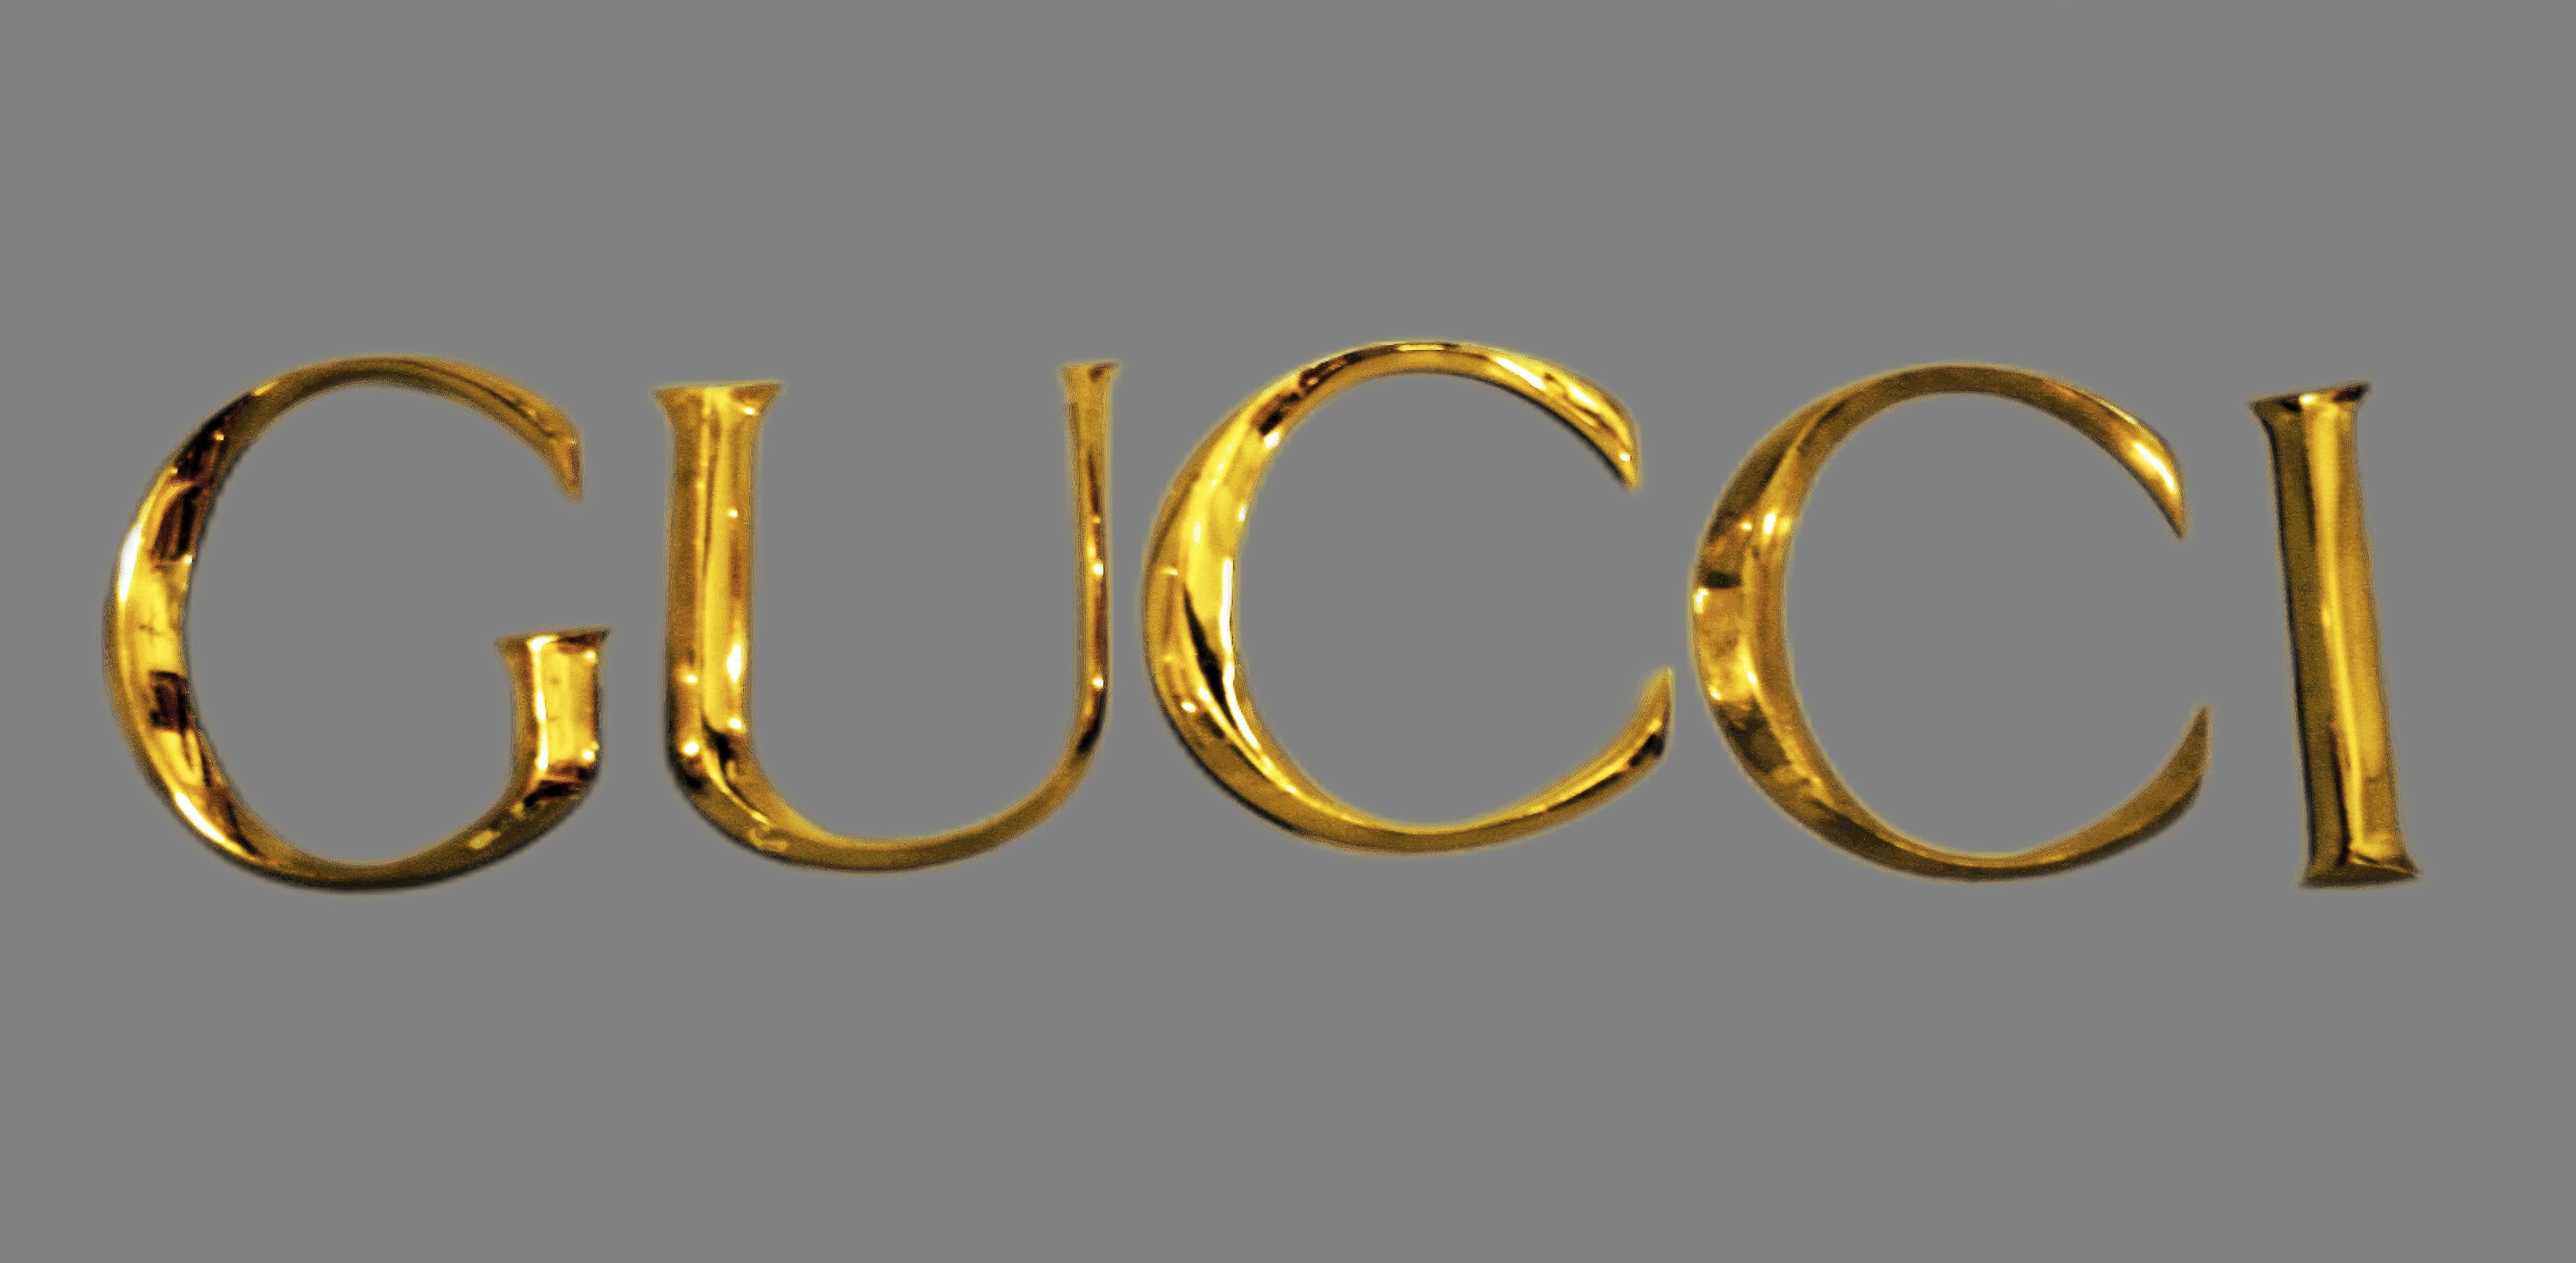 Ende des 20. Jahrhunderts dekorative Wand Ornament Gucci Buchstaben in goldenen Messing aus einem ihrer Einzelhandelsgeschäft gemacht

Von: Gucci
MATERIAL: Messing, Kupfer, Metall, Zink
Technik: gegossen, vergoldet, geformt, poliert,